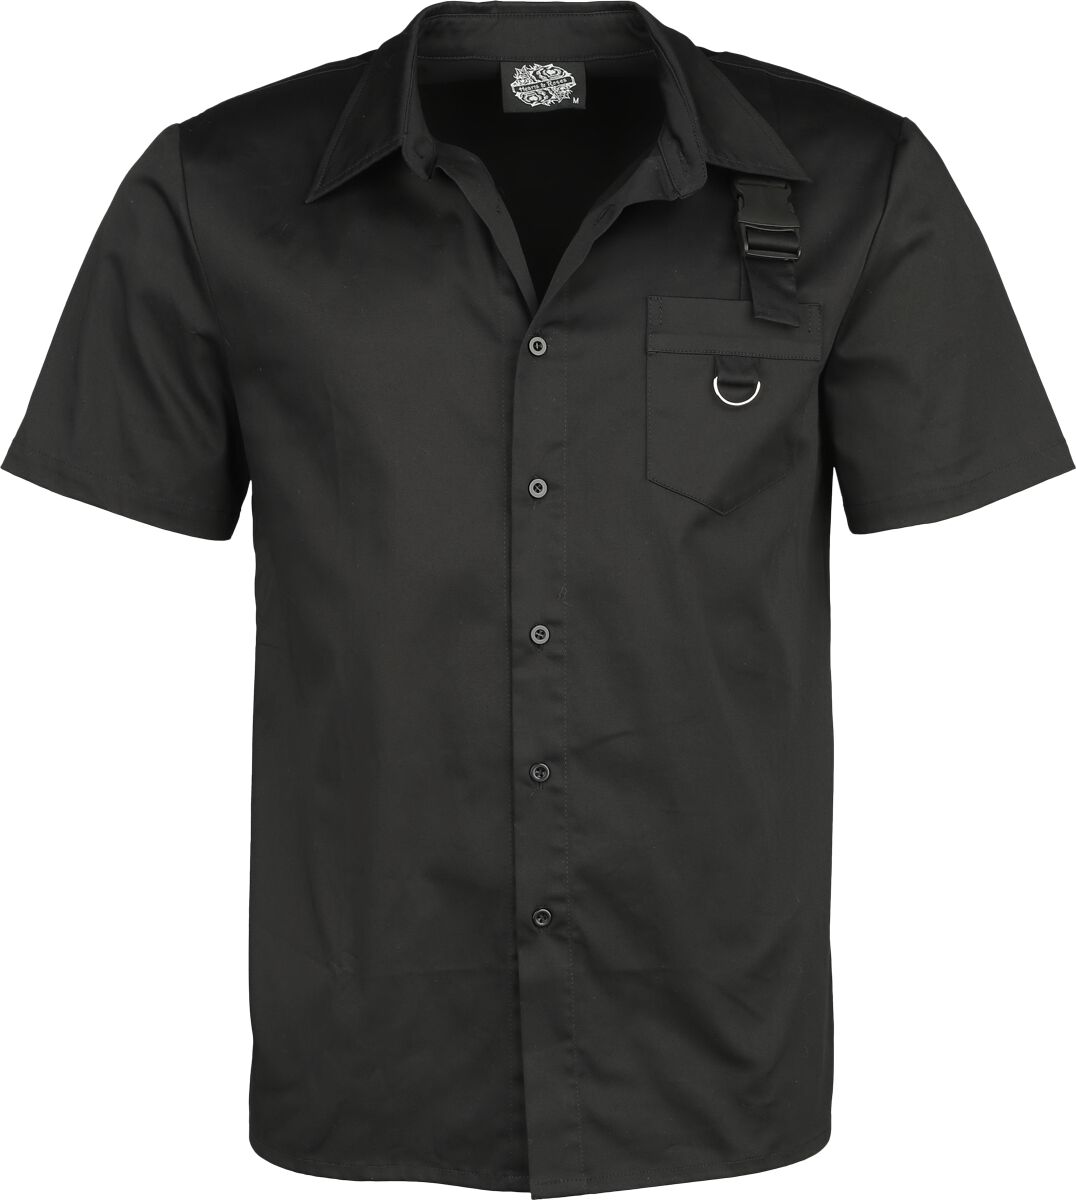 Image of Camicia Maniche Corte Gothic di H&R London - Black shirt - S a L - Uomo - nero